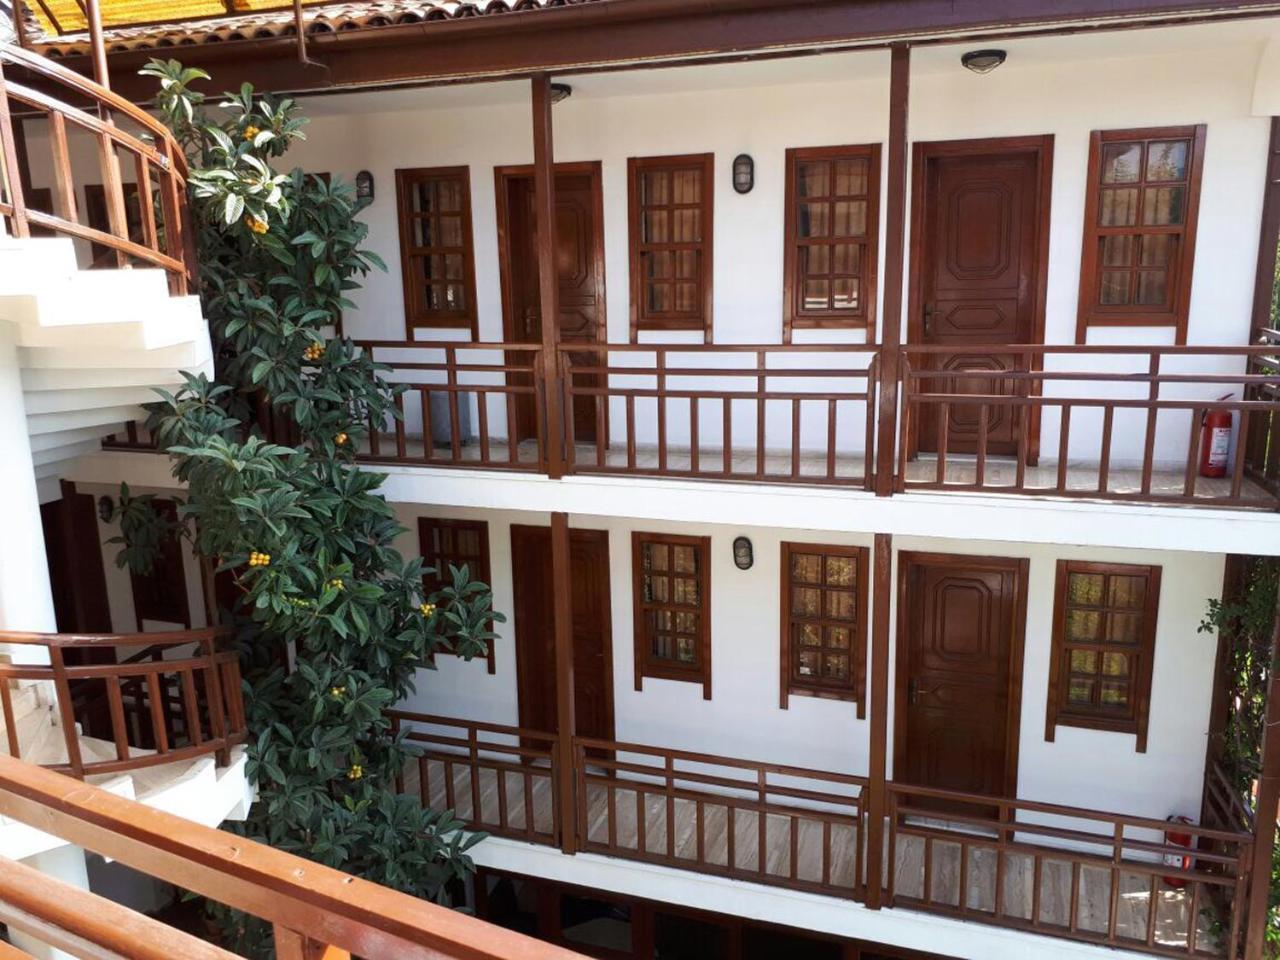 Hotel Karyatit Kaleici Antalya Exterior foto